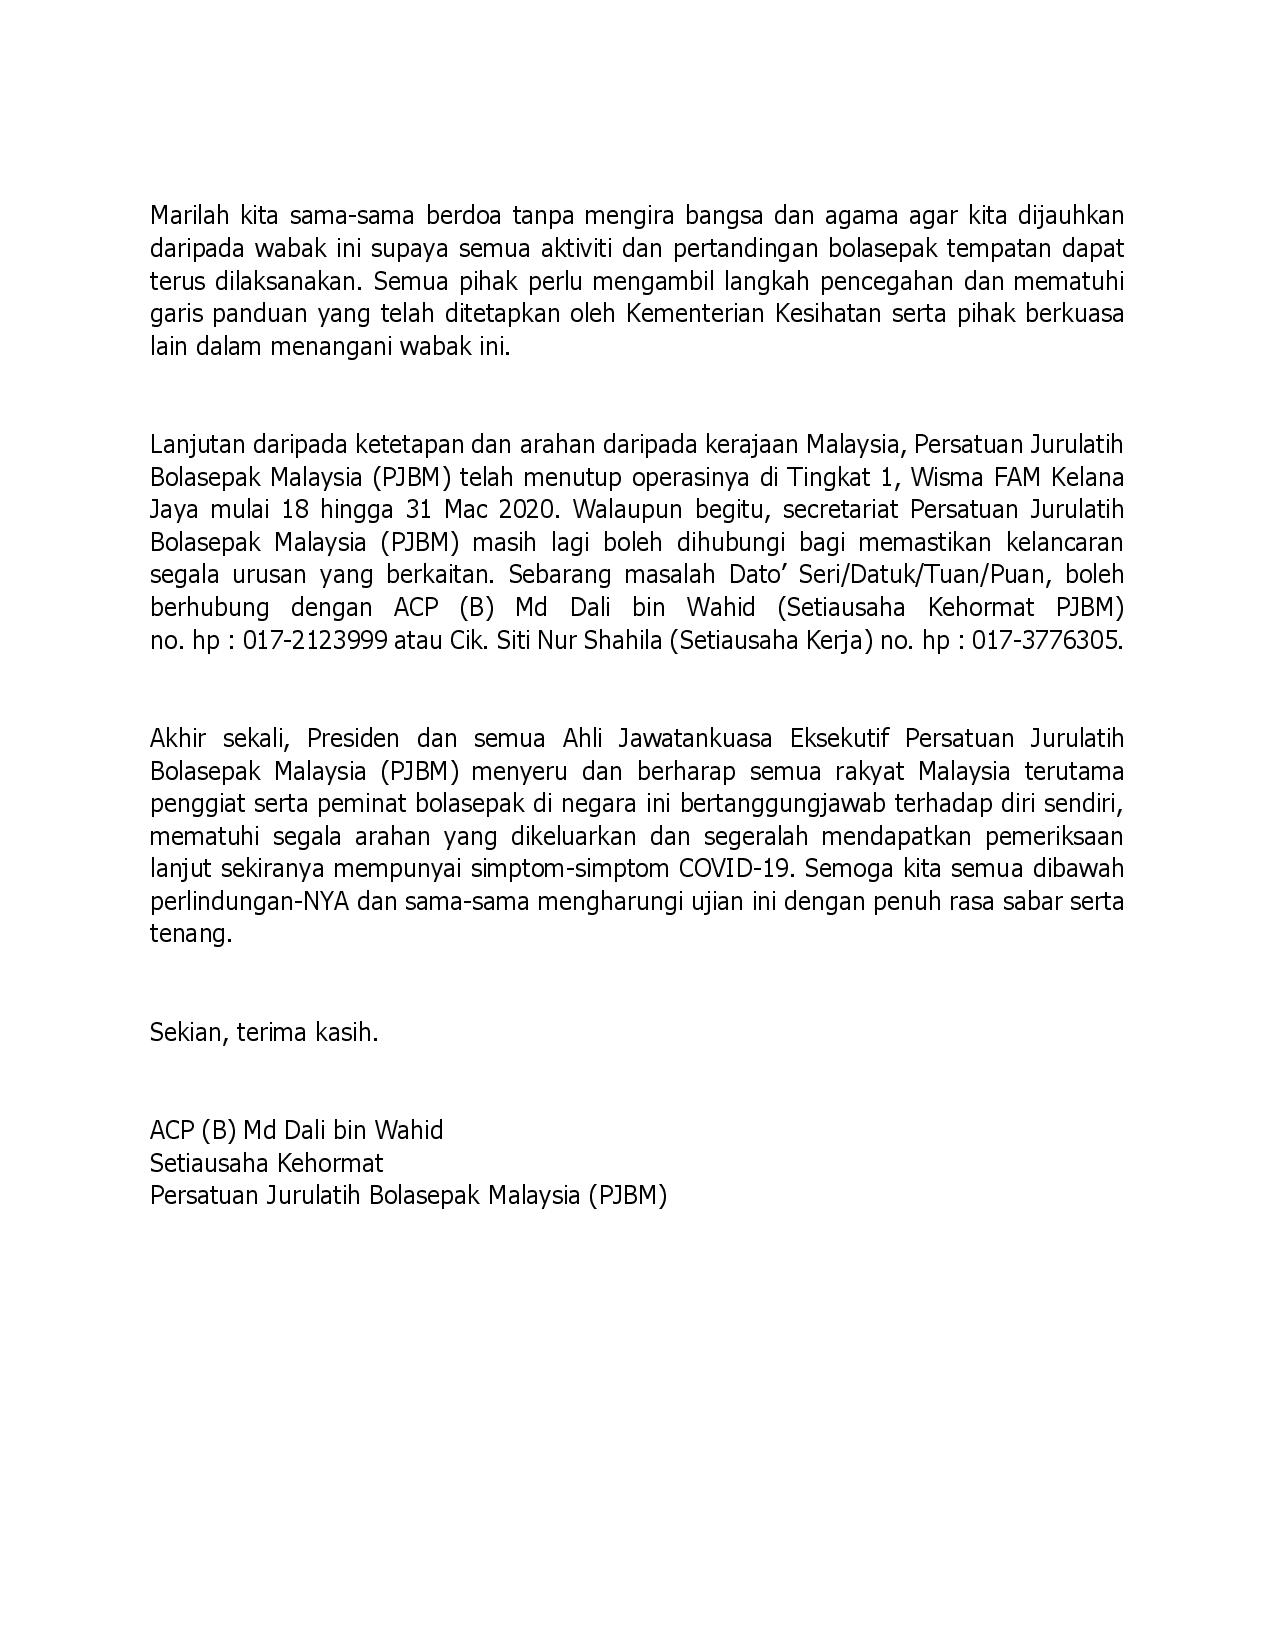 PERINGATAN MESRA PERSATUAN JURULATIH BOLASEPAK MALAYSIA MENGENAI COVID-19